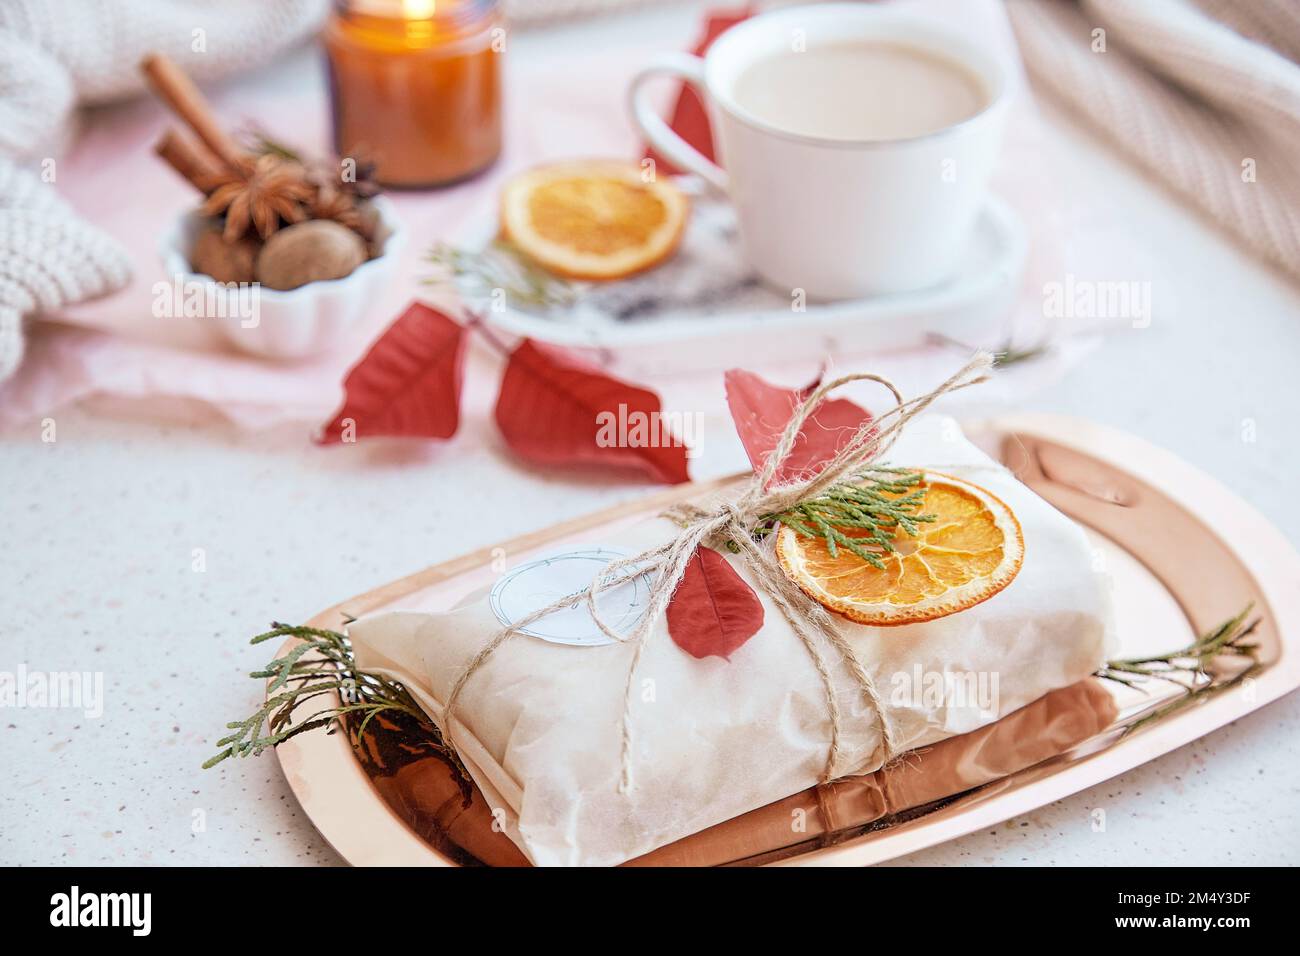 Torta tradizionale tedesca decorata in omaggio, tazza di cacao, arance secche e candela. Regalo per la stagione natalizia. Estetica accogliente casa. Foto Stock